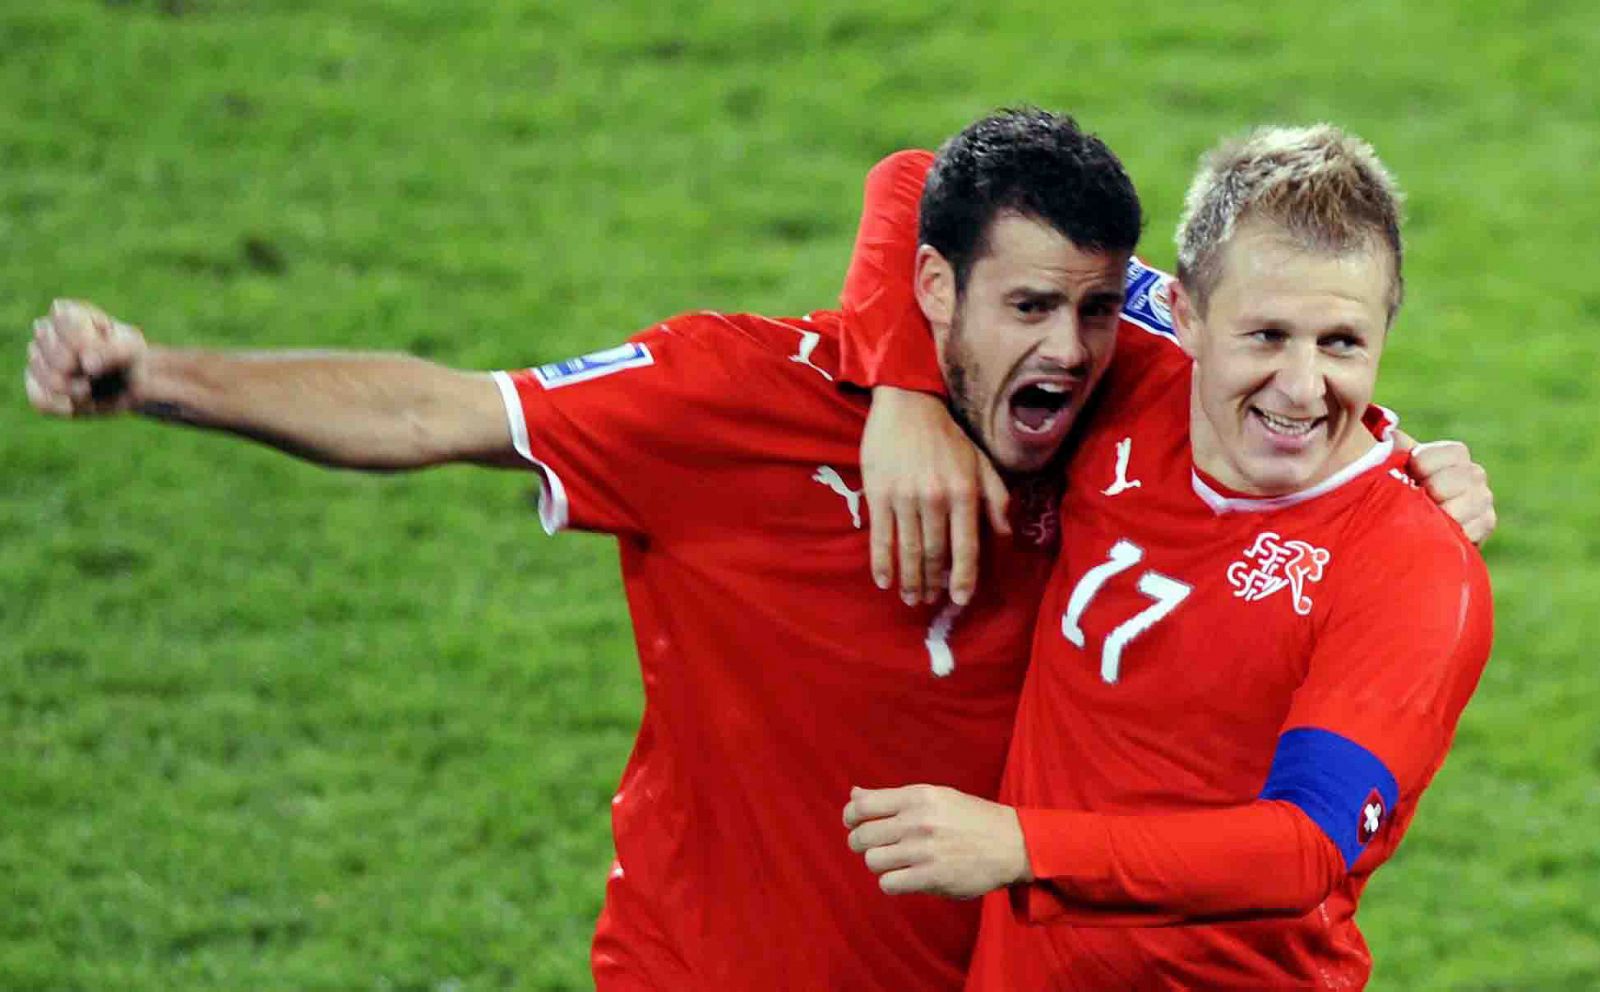 Los jugadores de la selección de fútbol de Suiza, Tranquillo Barnetta y Christoph Spycher celebran tras su partido contra Israel el pase al Mundial.